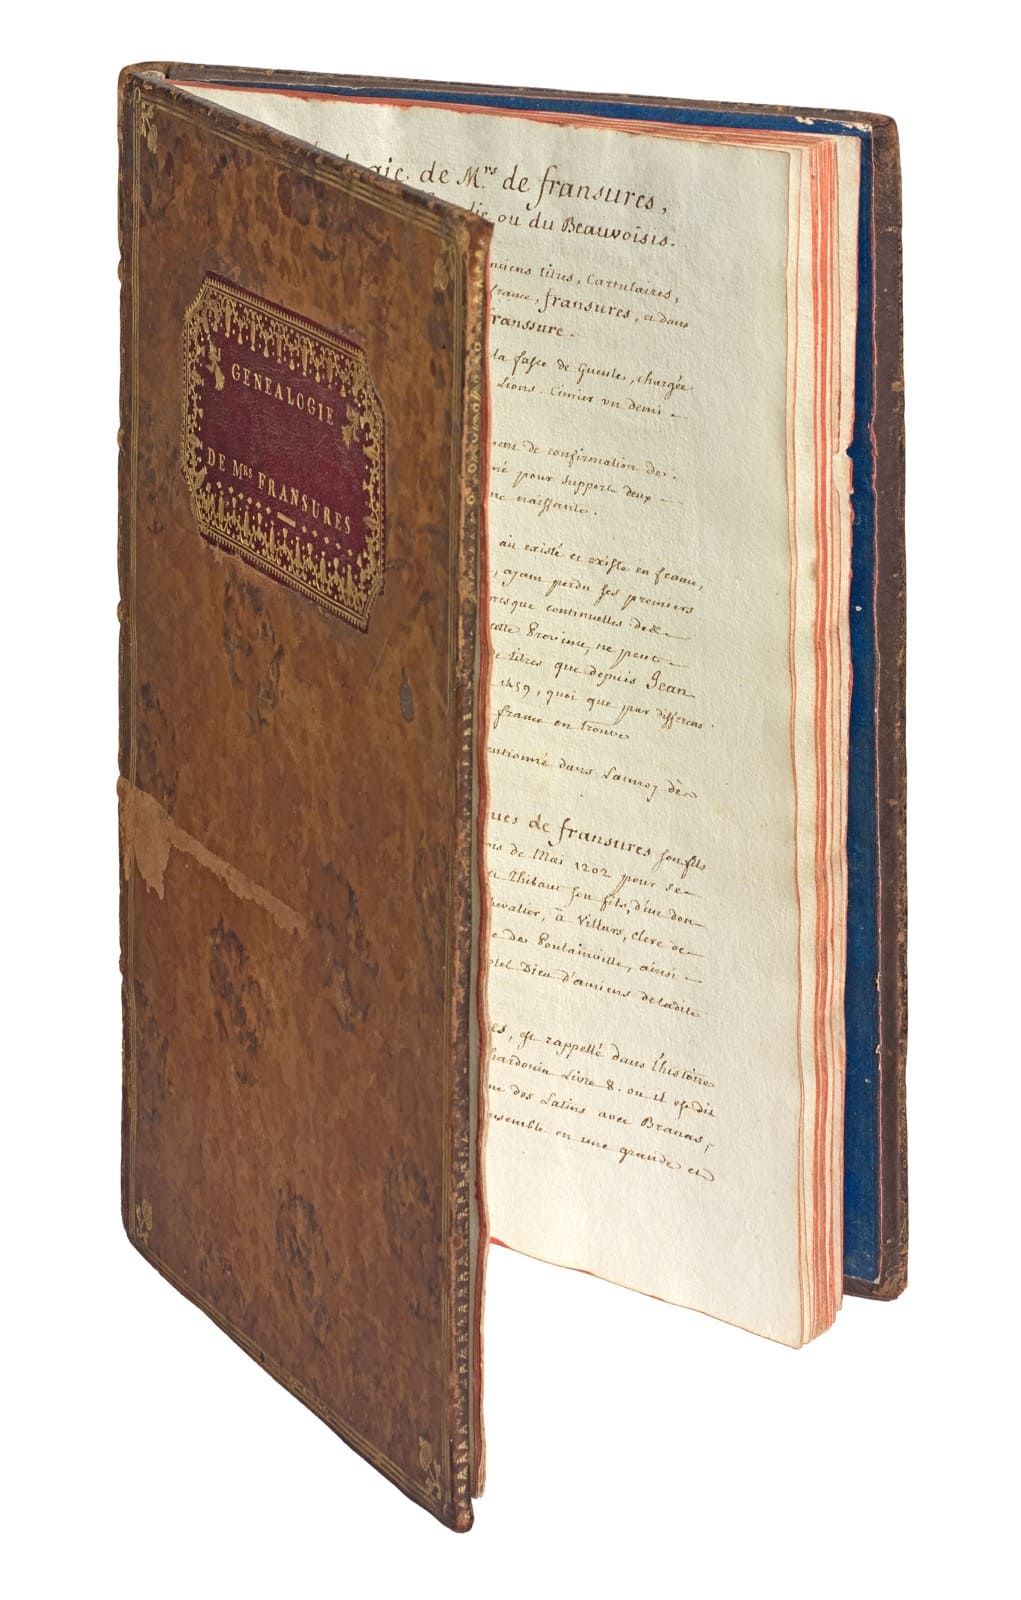 [FRANSURES]. Genealogía de la señora de Fransures. Manuscrito fechado en 1780, i&hellip;